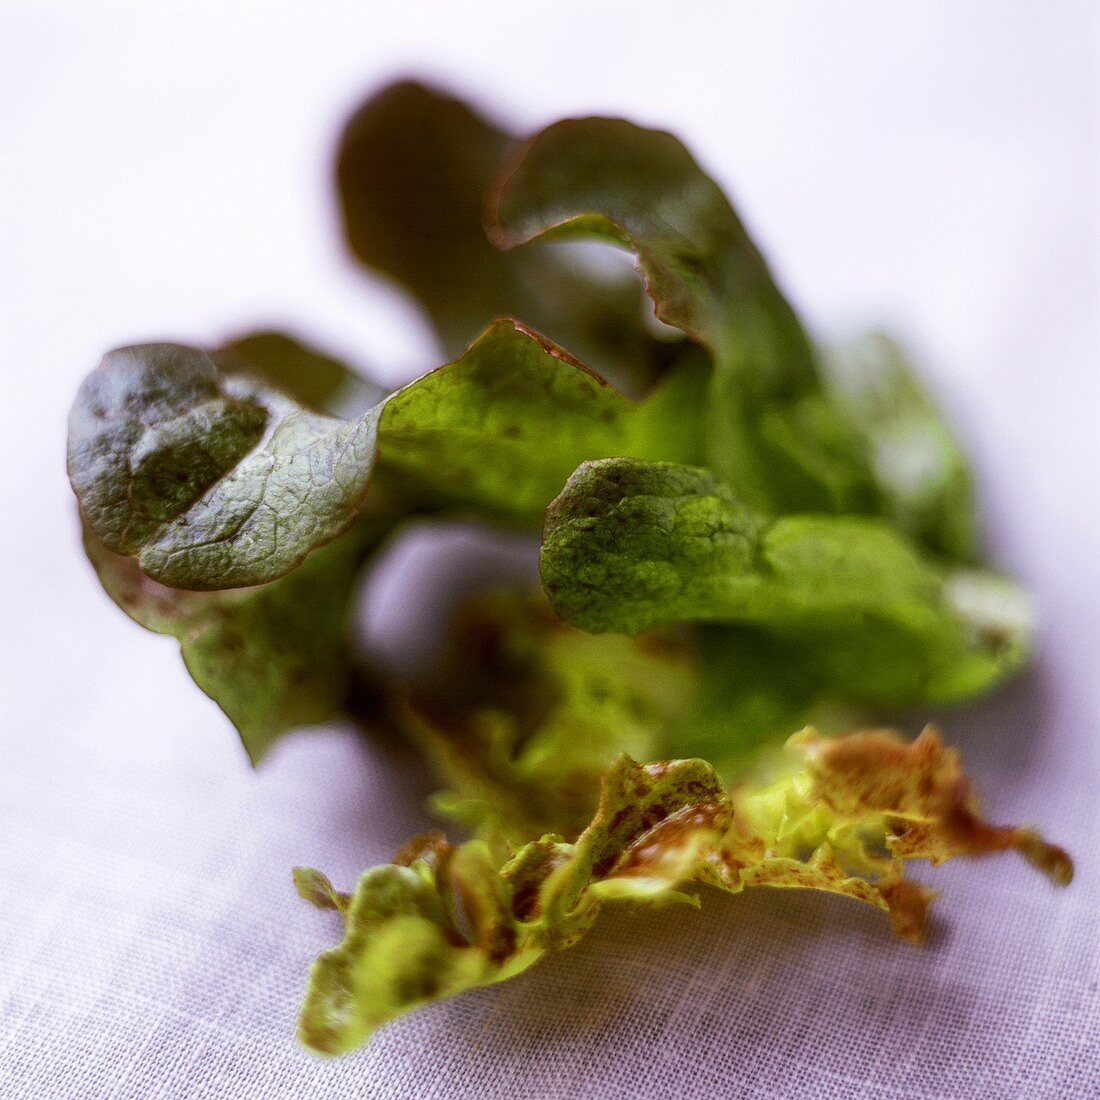 Oak-leaf lettuce